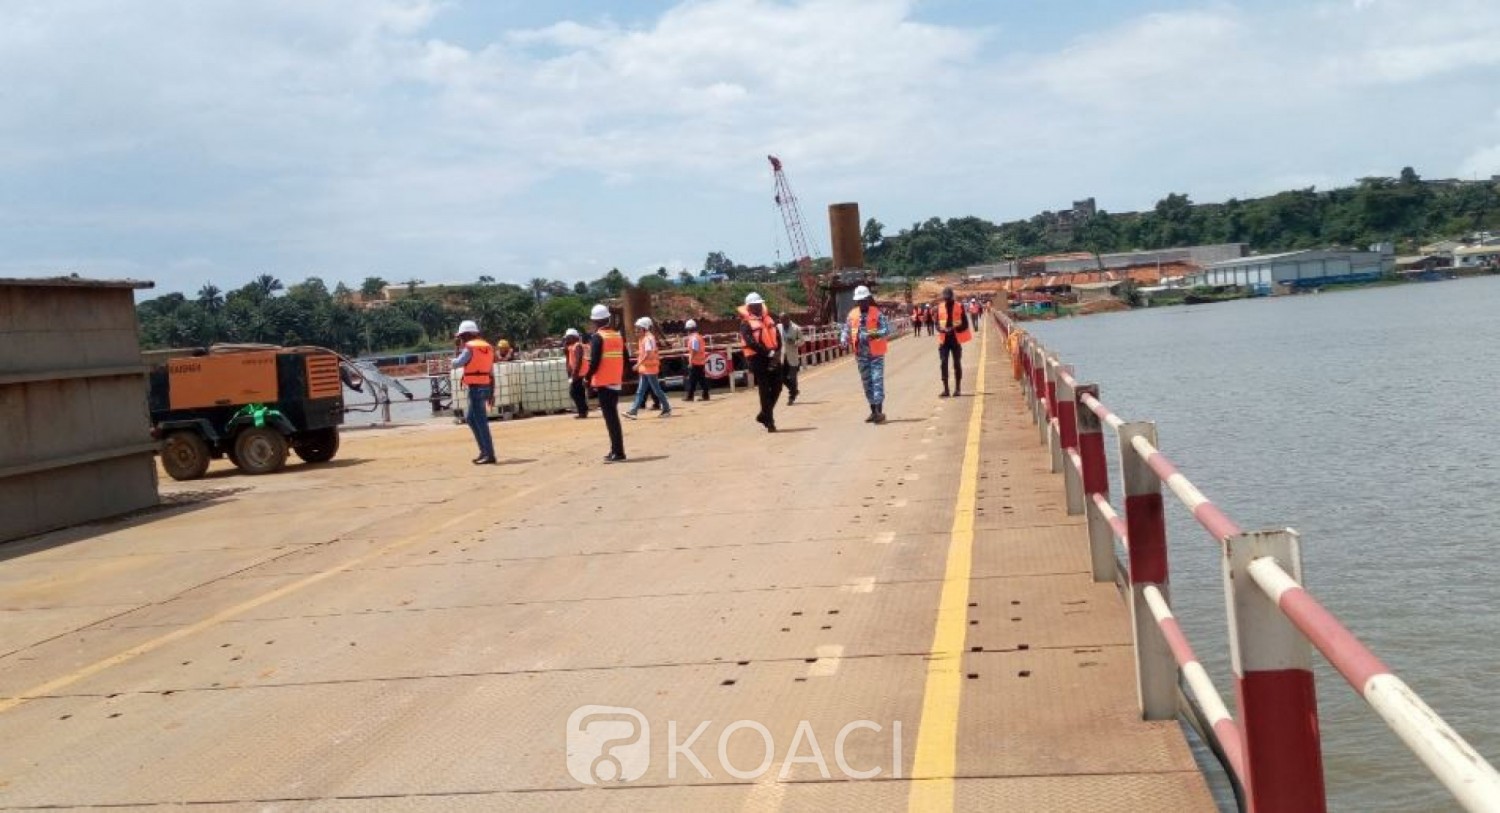 Côte d'Ivoire: Les travaux du 4è Pont reliant reliant la commune de Yopougon à celle du Plateau avancent correctement malgré quelques difficultés